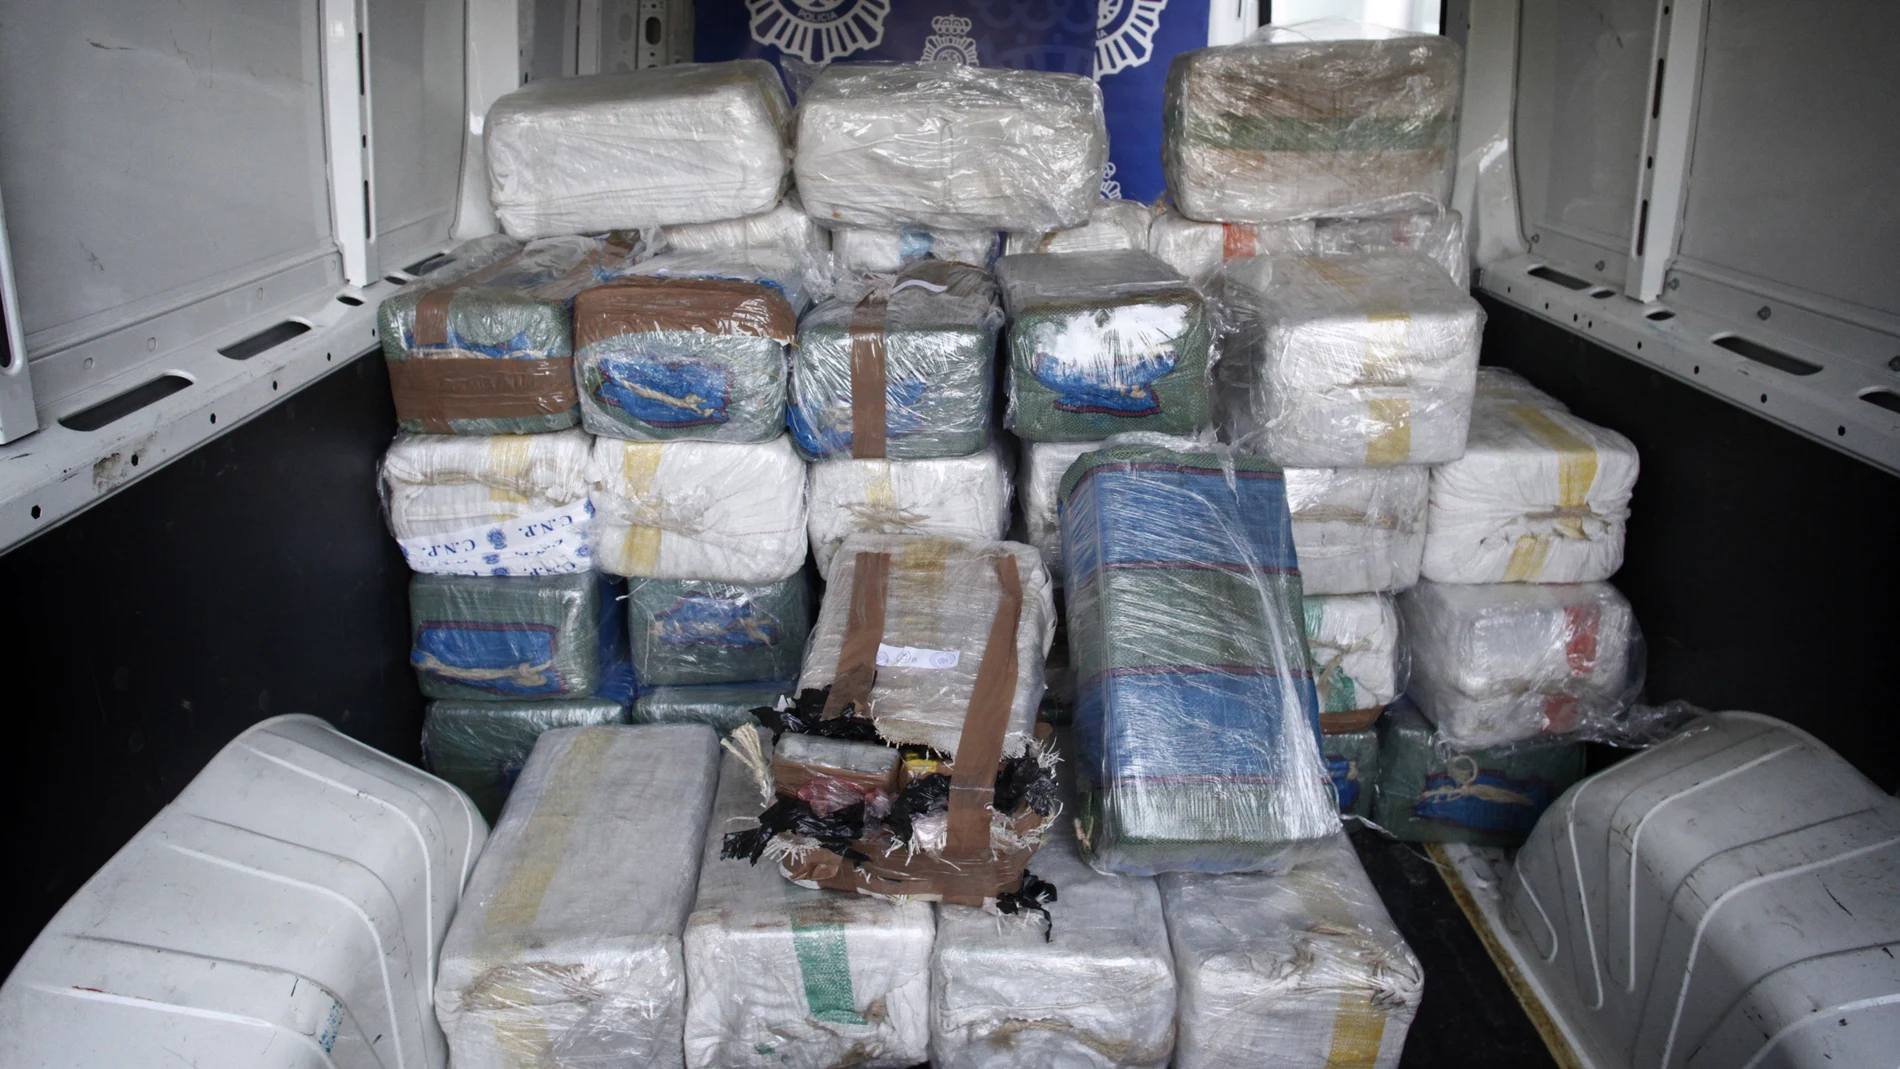 Algunos de los fardos de cocaína incautados en una operación de la Policía Nacional